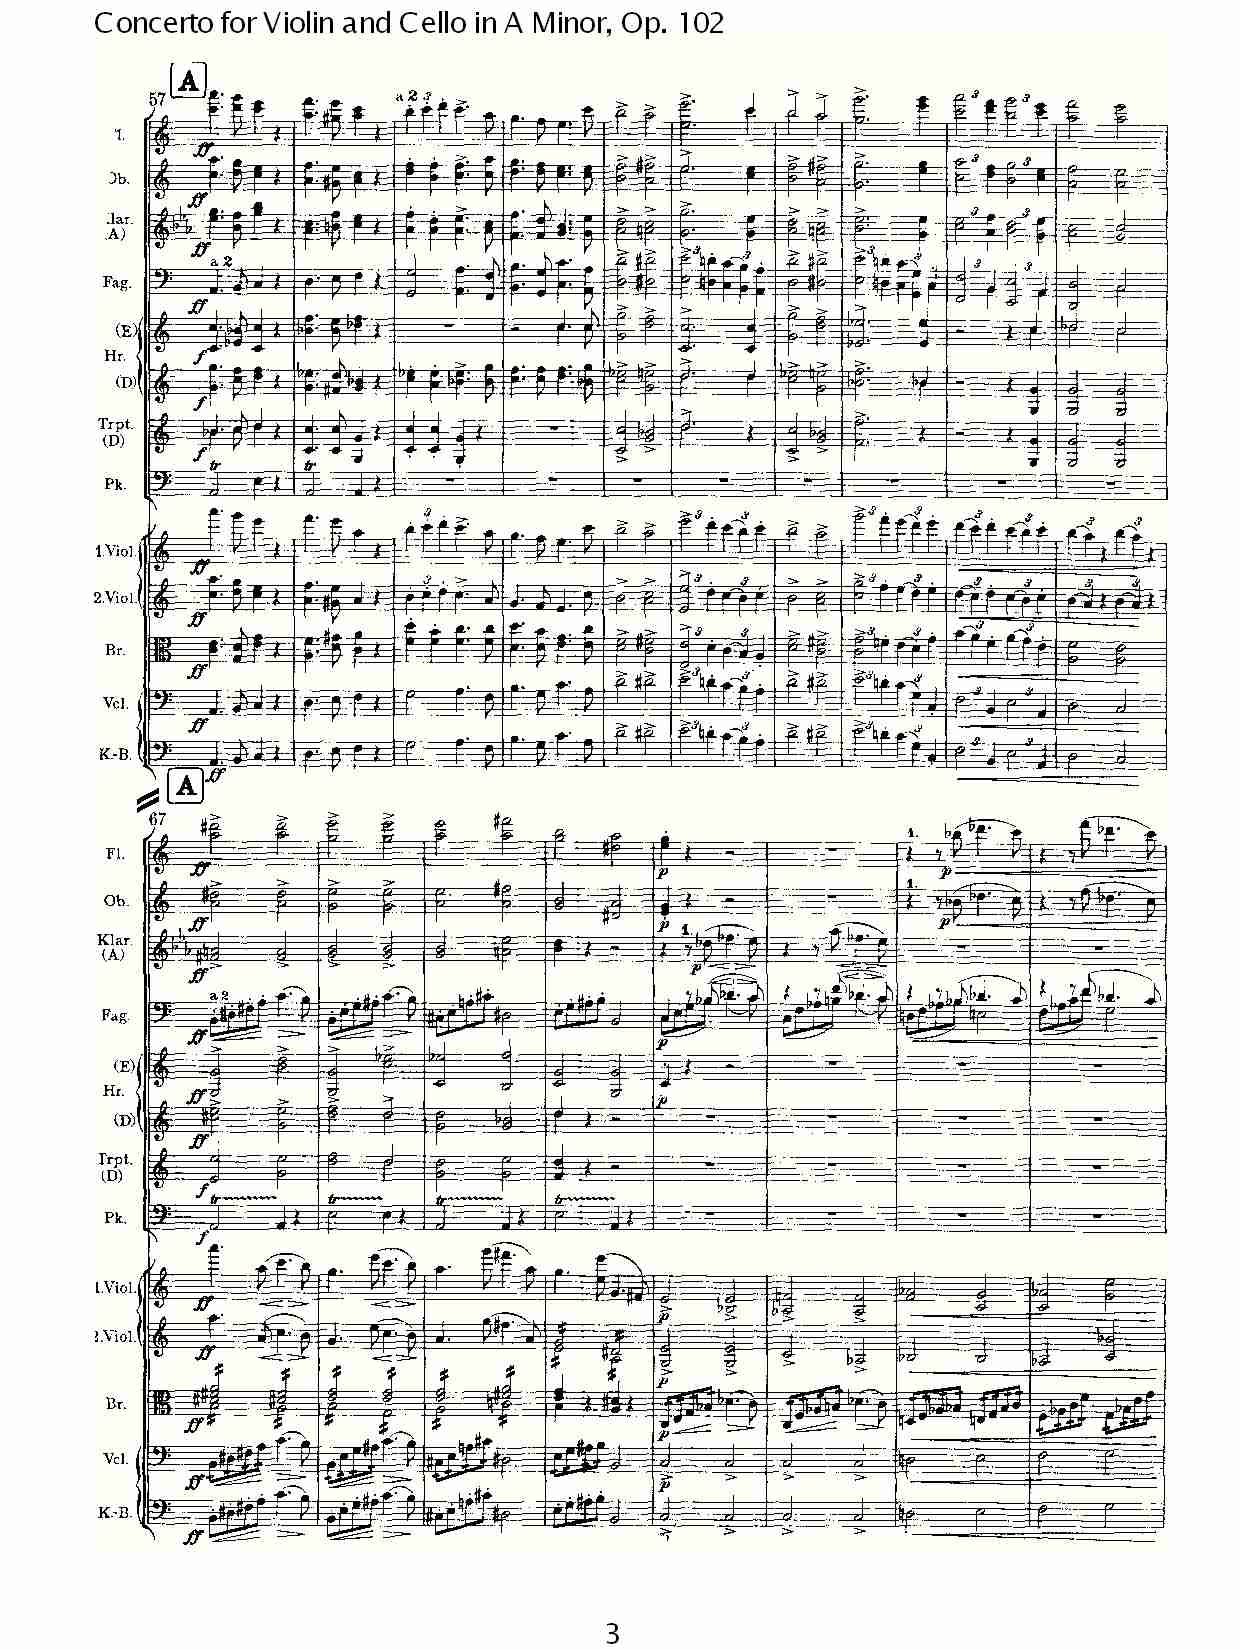 A小调小提琴与大提琴协奏曲, Op.102第一乐章（一）总谱（图3）